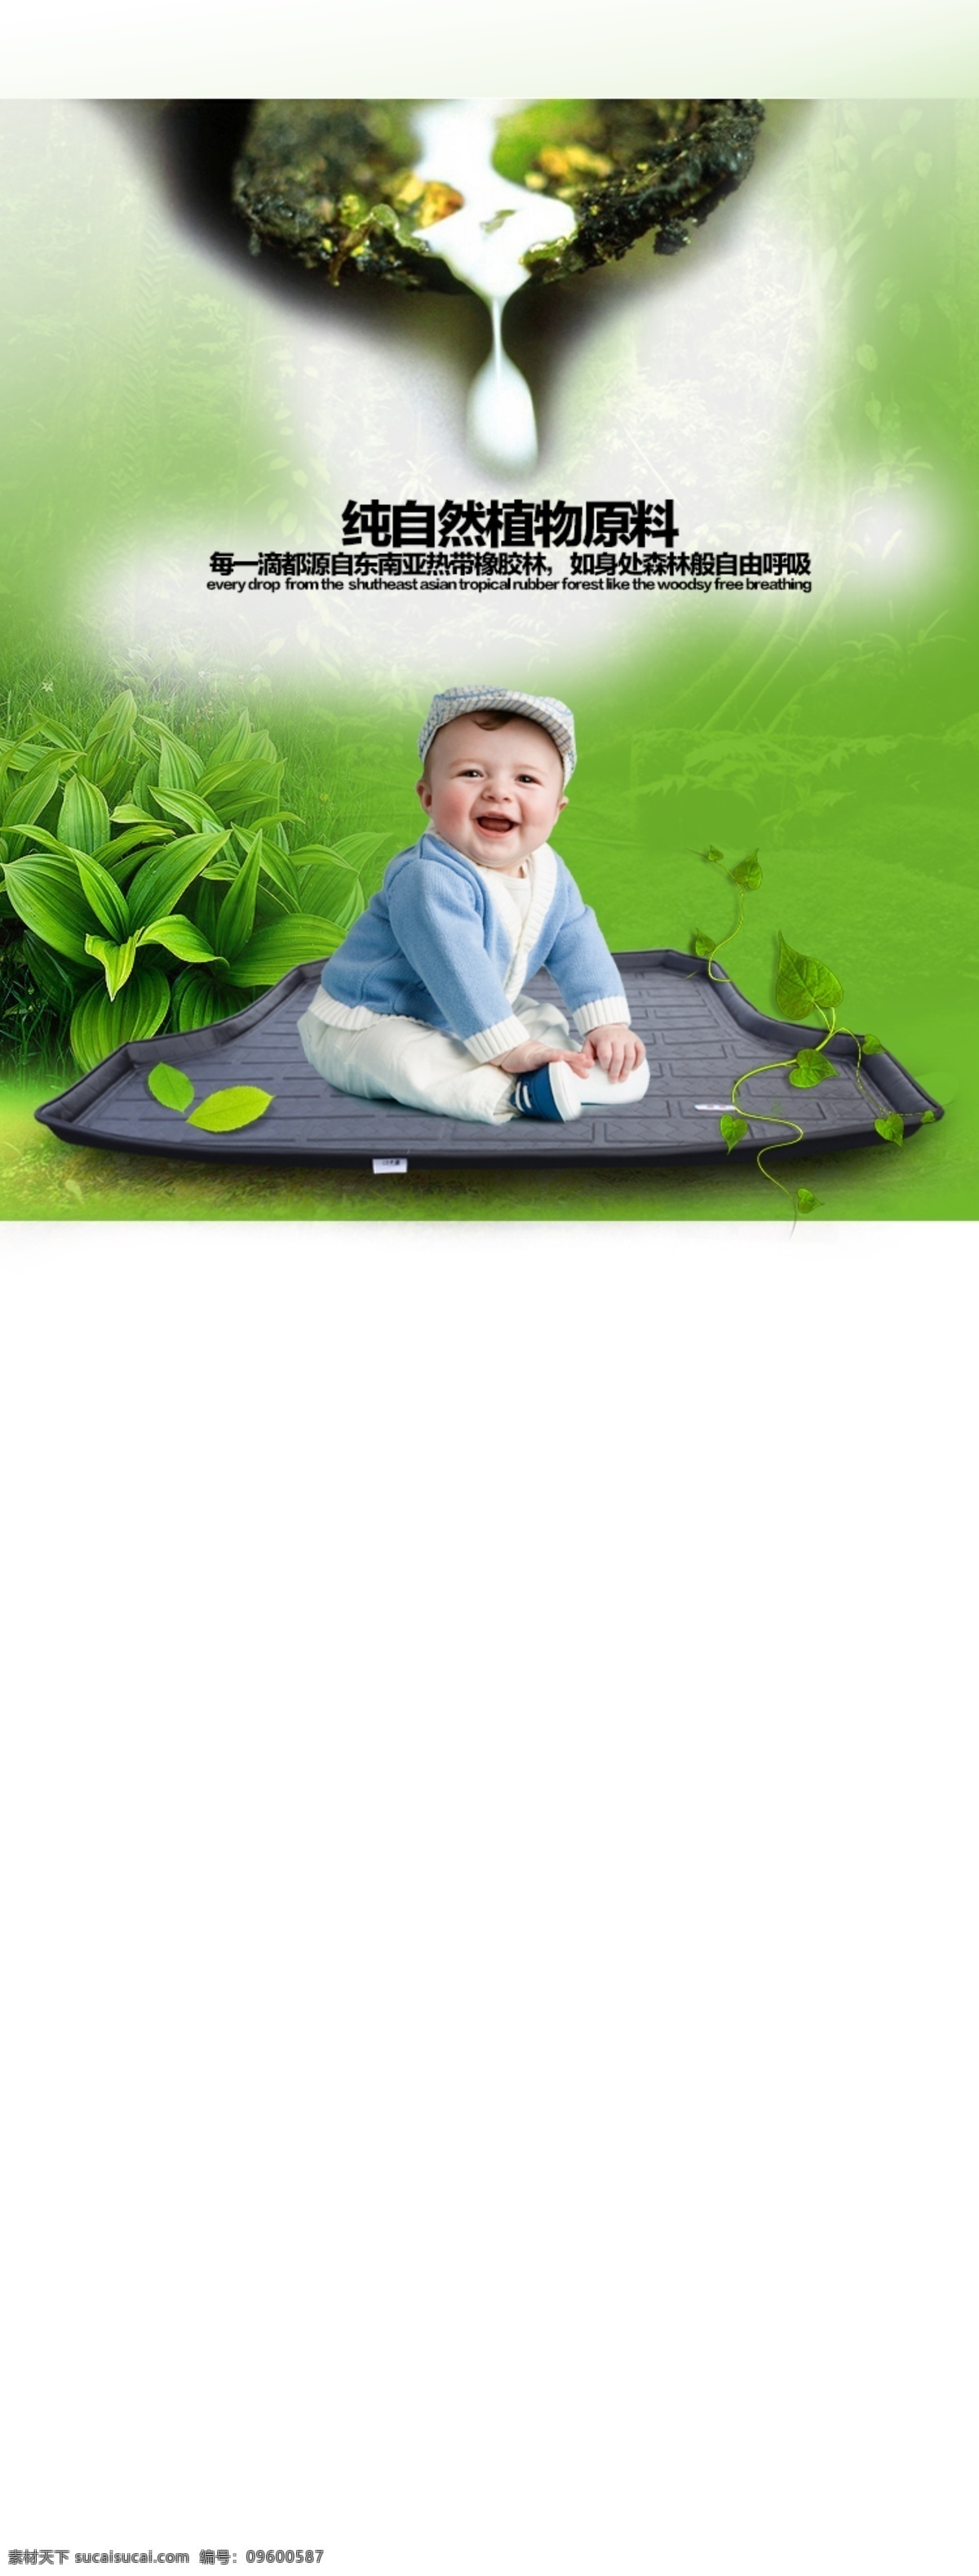 唯美大自然 环保汽车脚垫 环保 汽车脚垫 绿色 草地 藤蔓 健康的 大自然 微笑宝宝